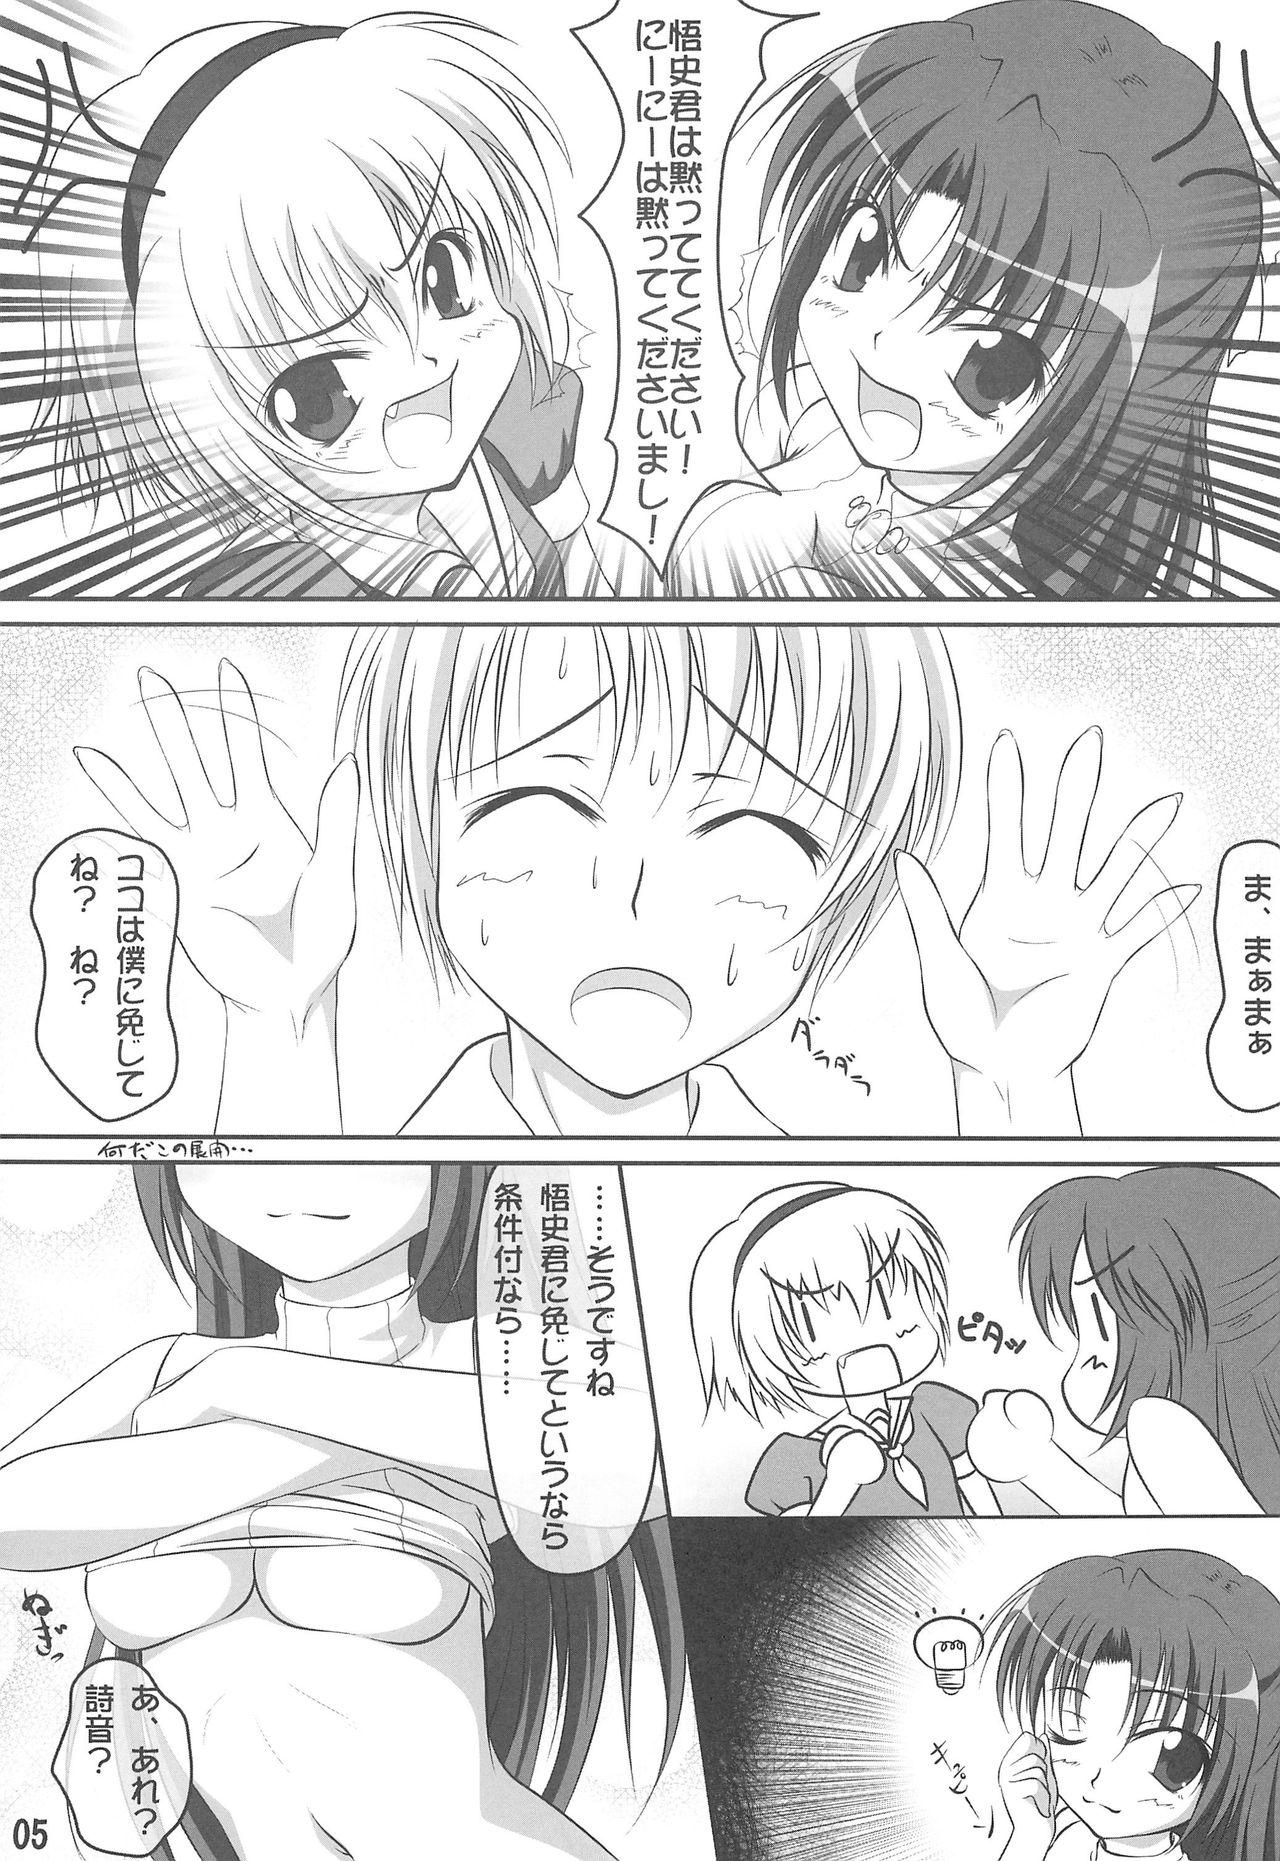 Ftv Girls Double Attack! - Higurashi no naku koro ni Tattoo - Page 4